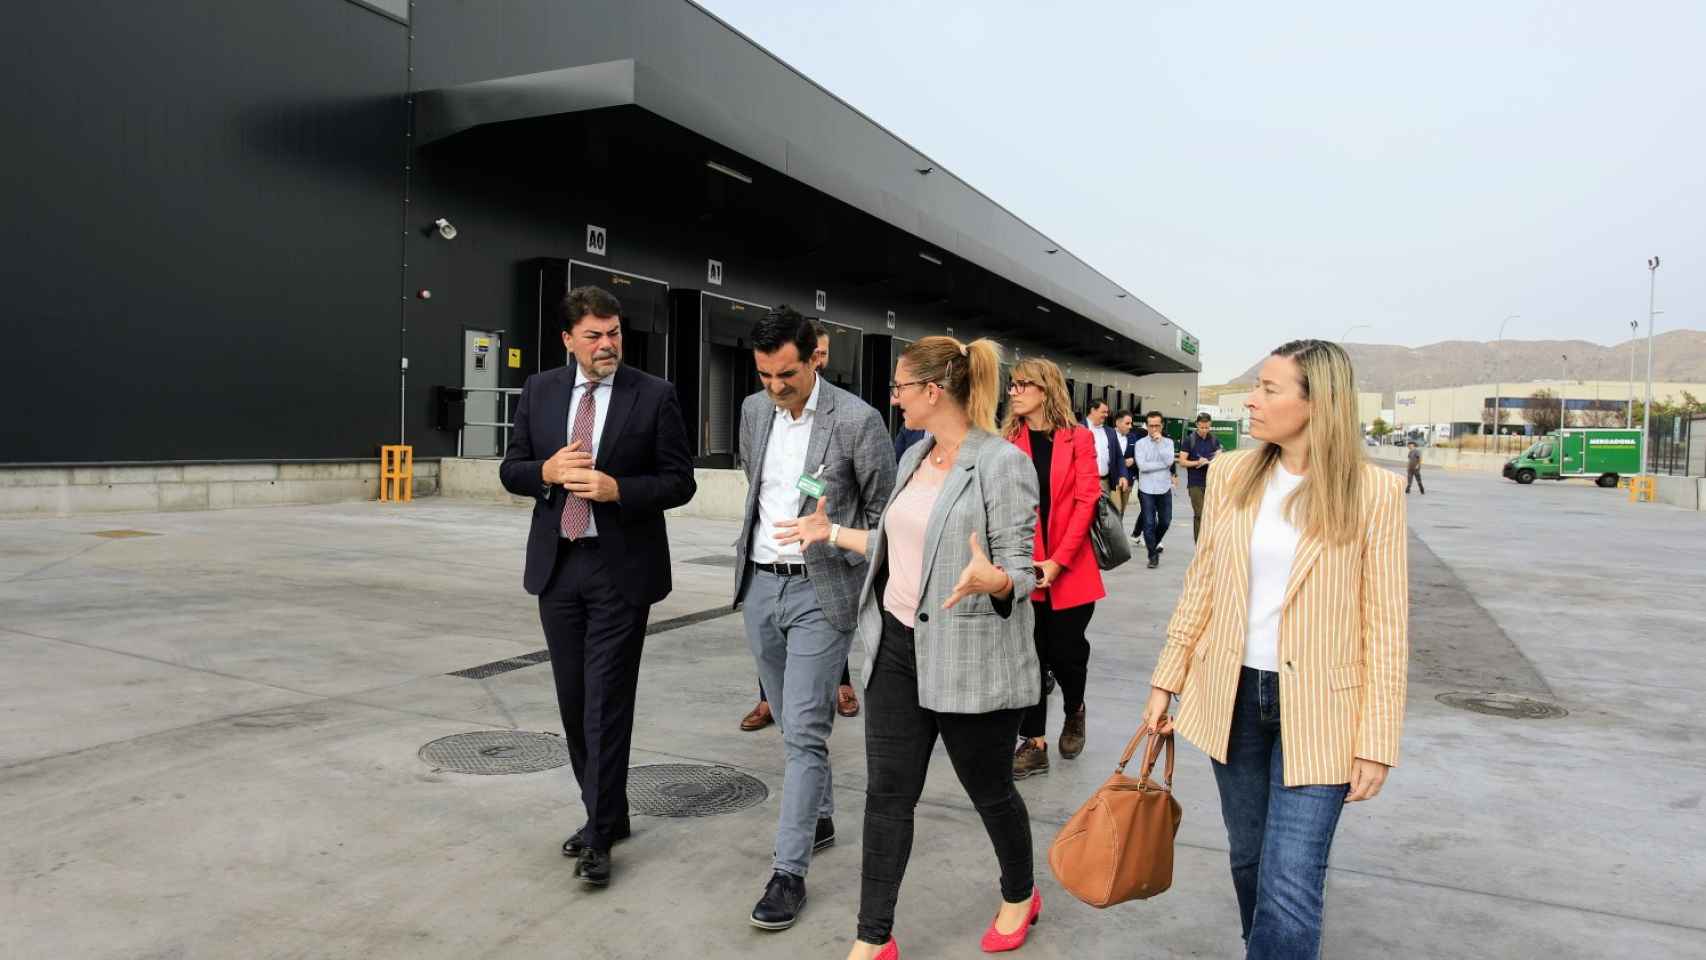 El alcalde Barcala junto con responsables políticos y de Mercadona en su estación logística de Alicante.